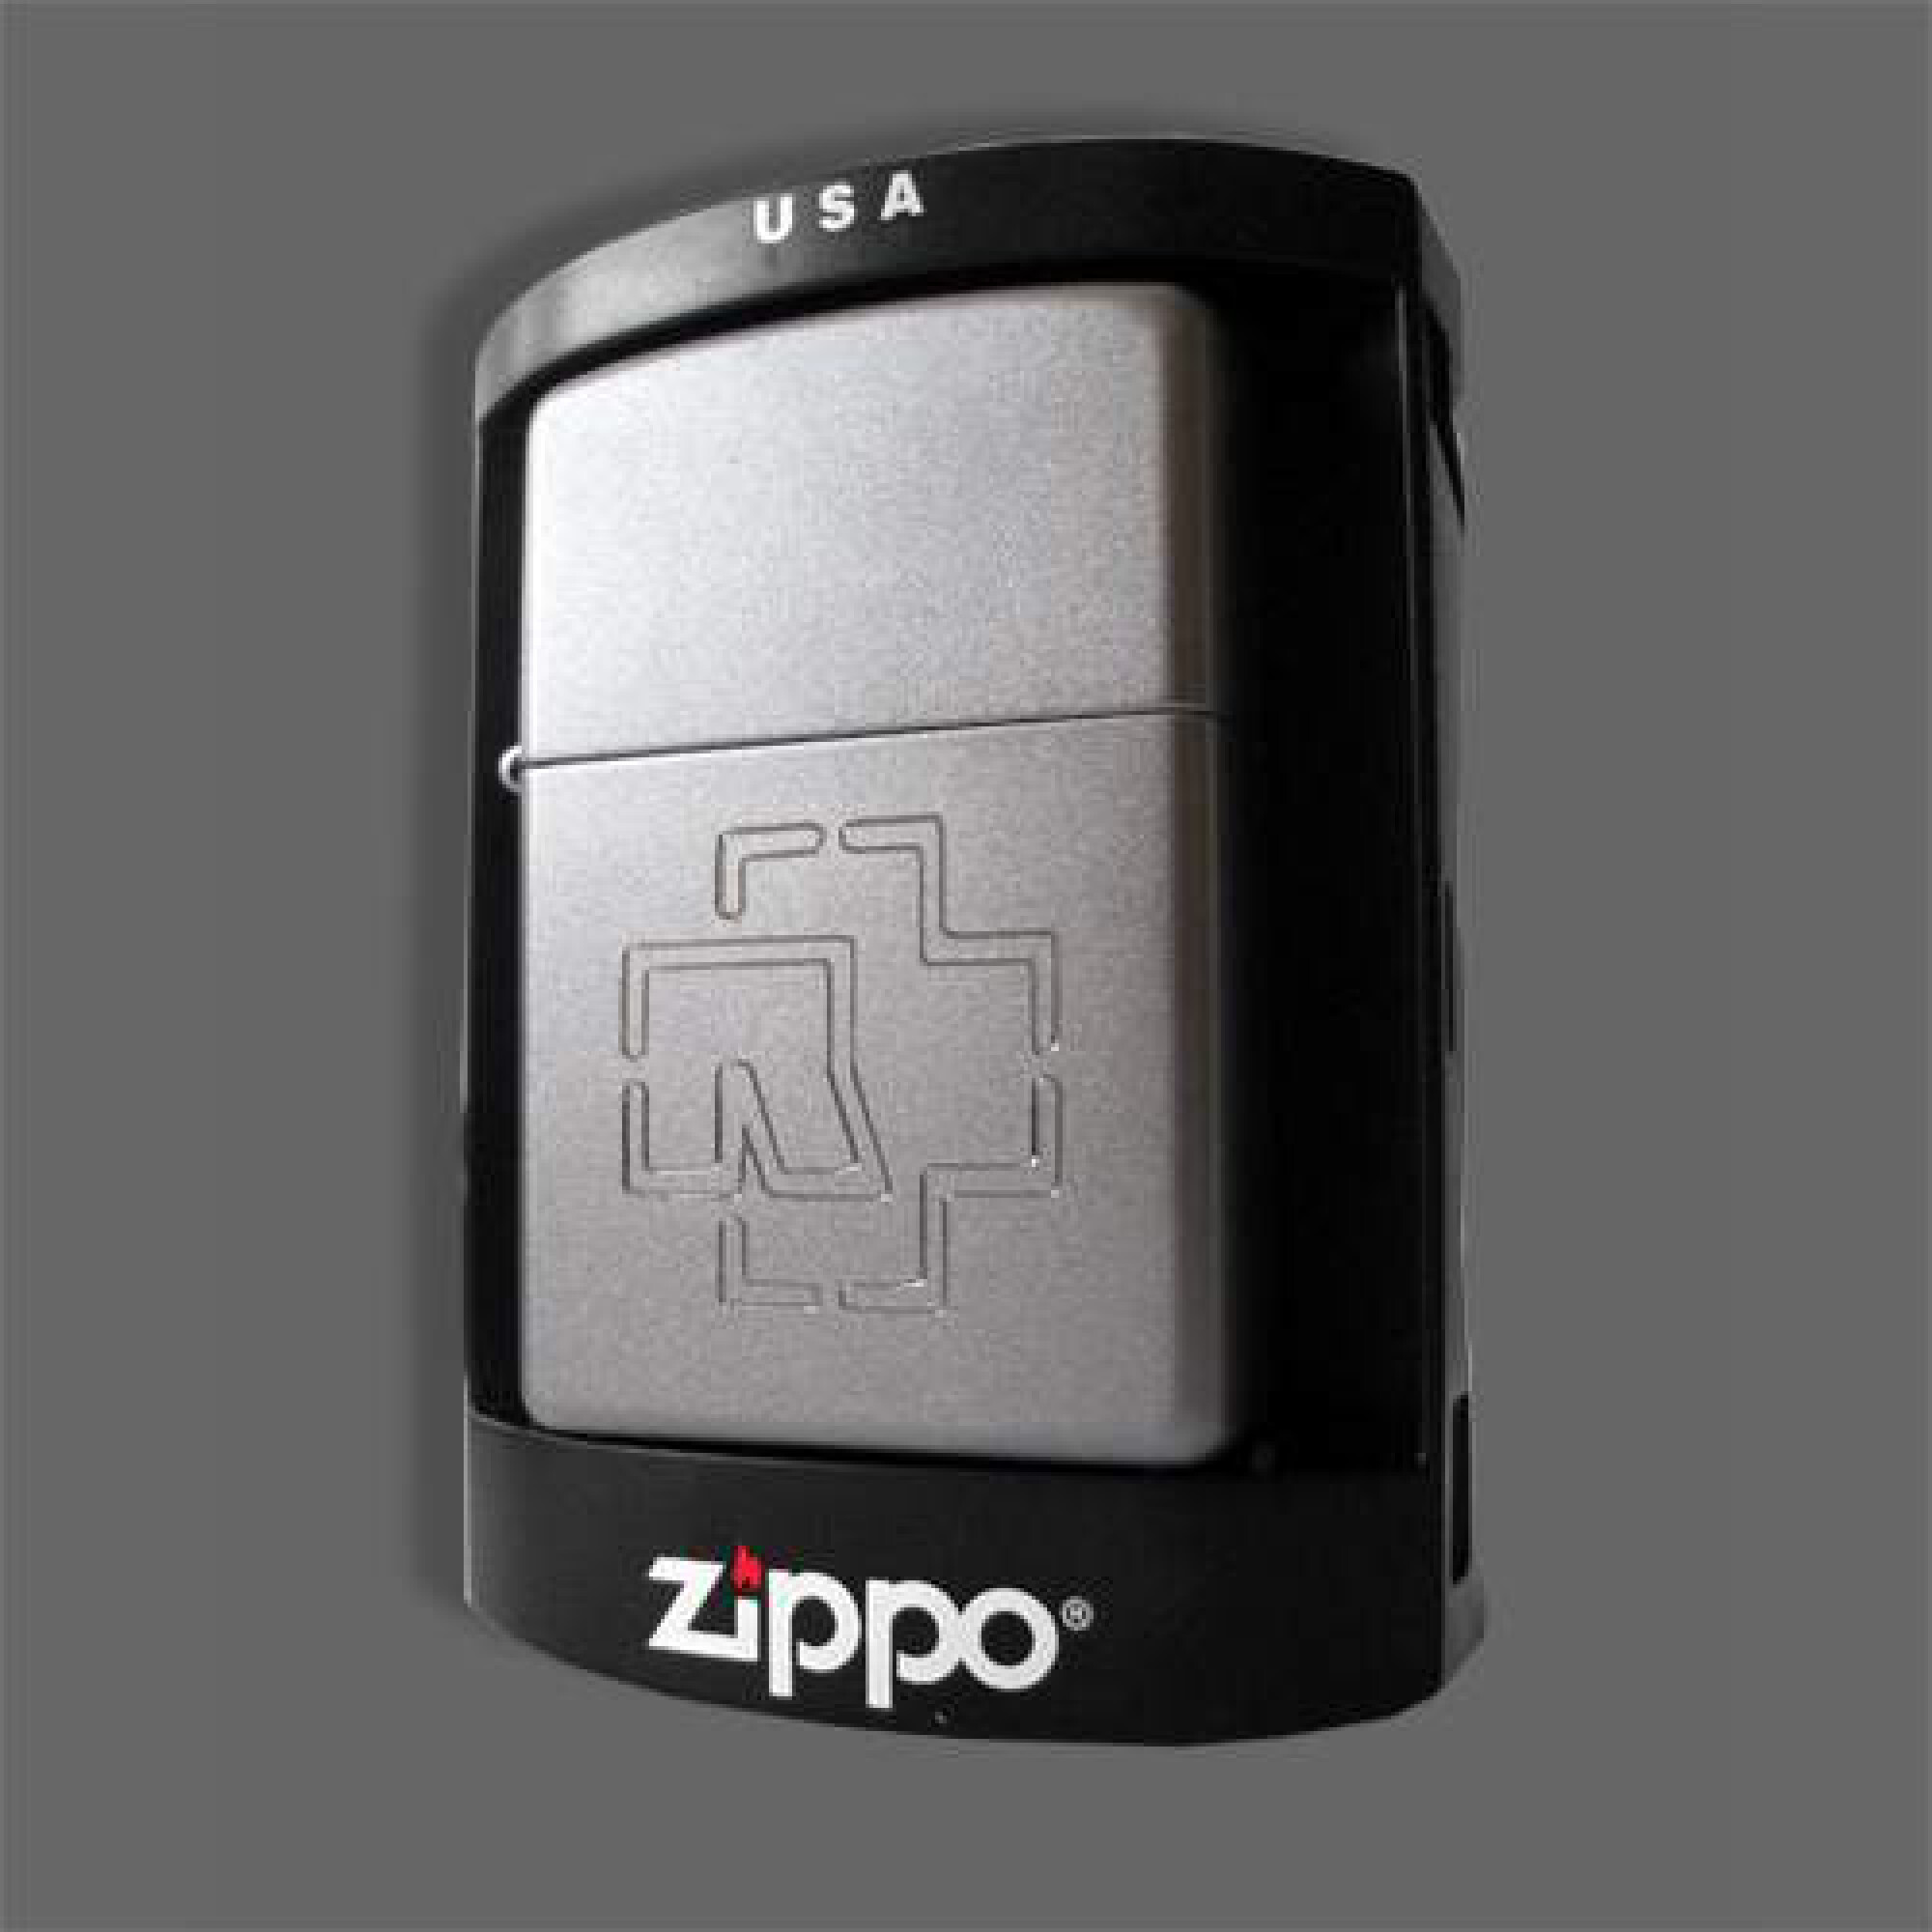 Zippo lighter ”Logo” *Satin Chrome*